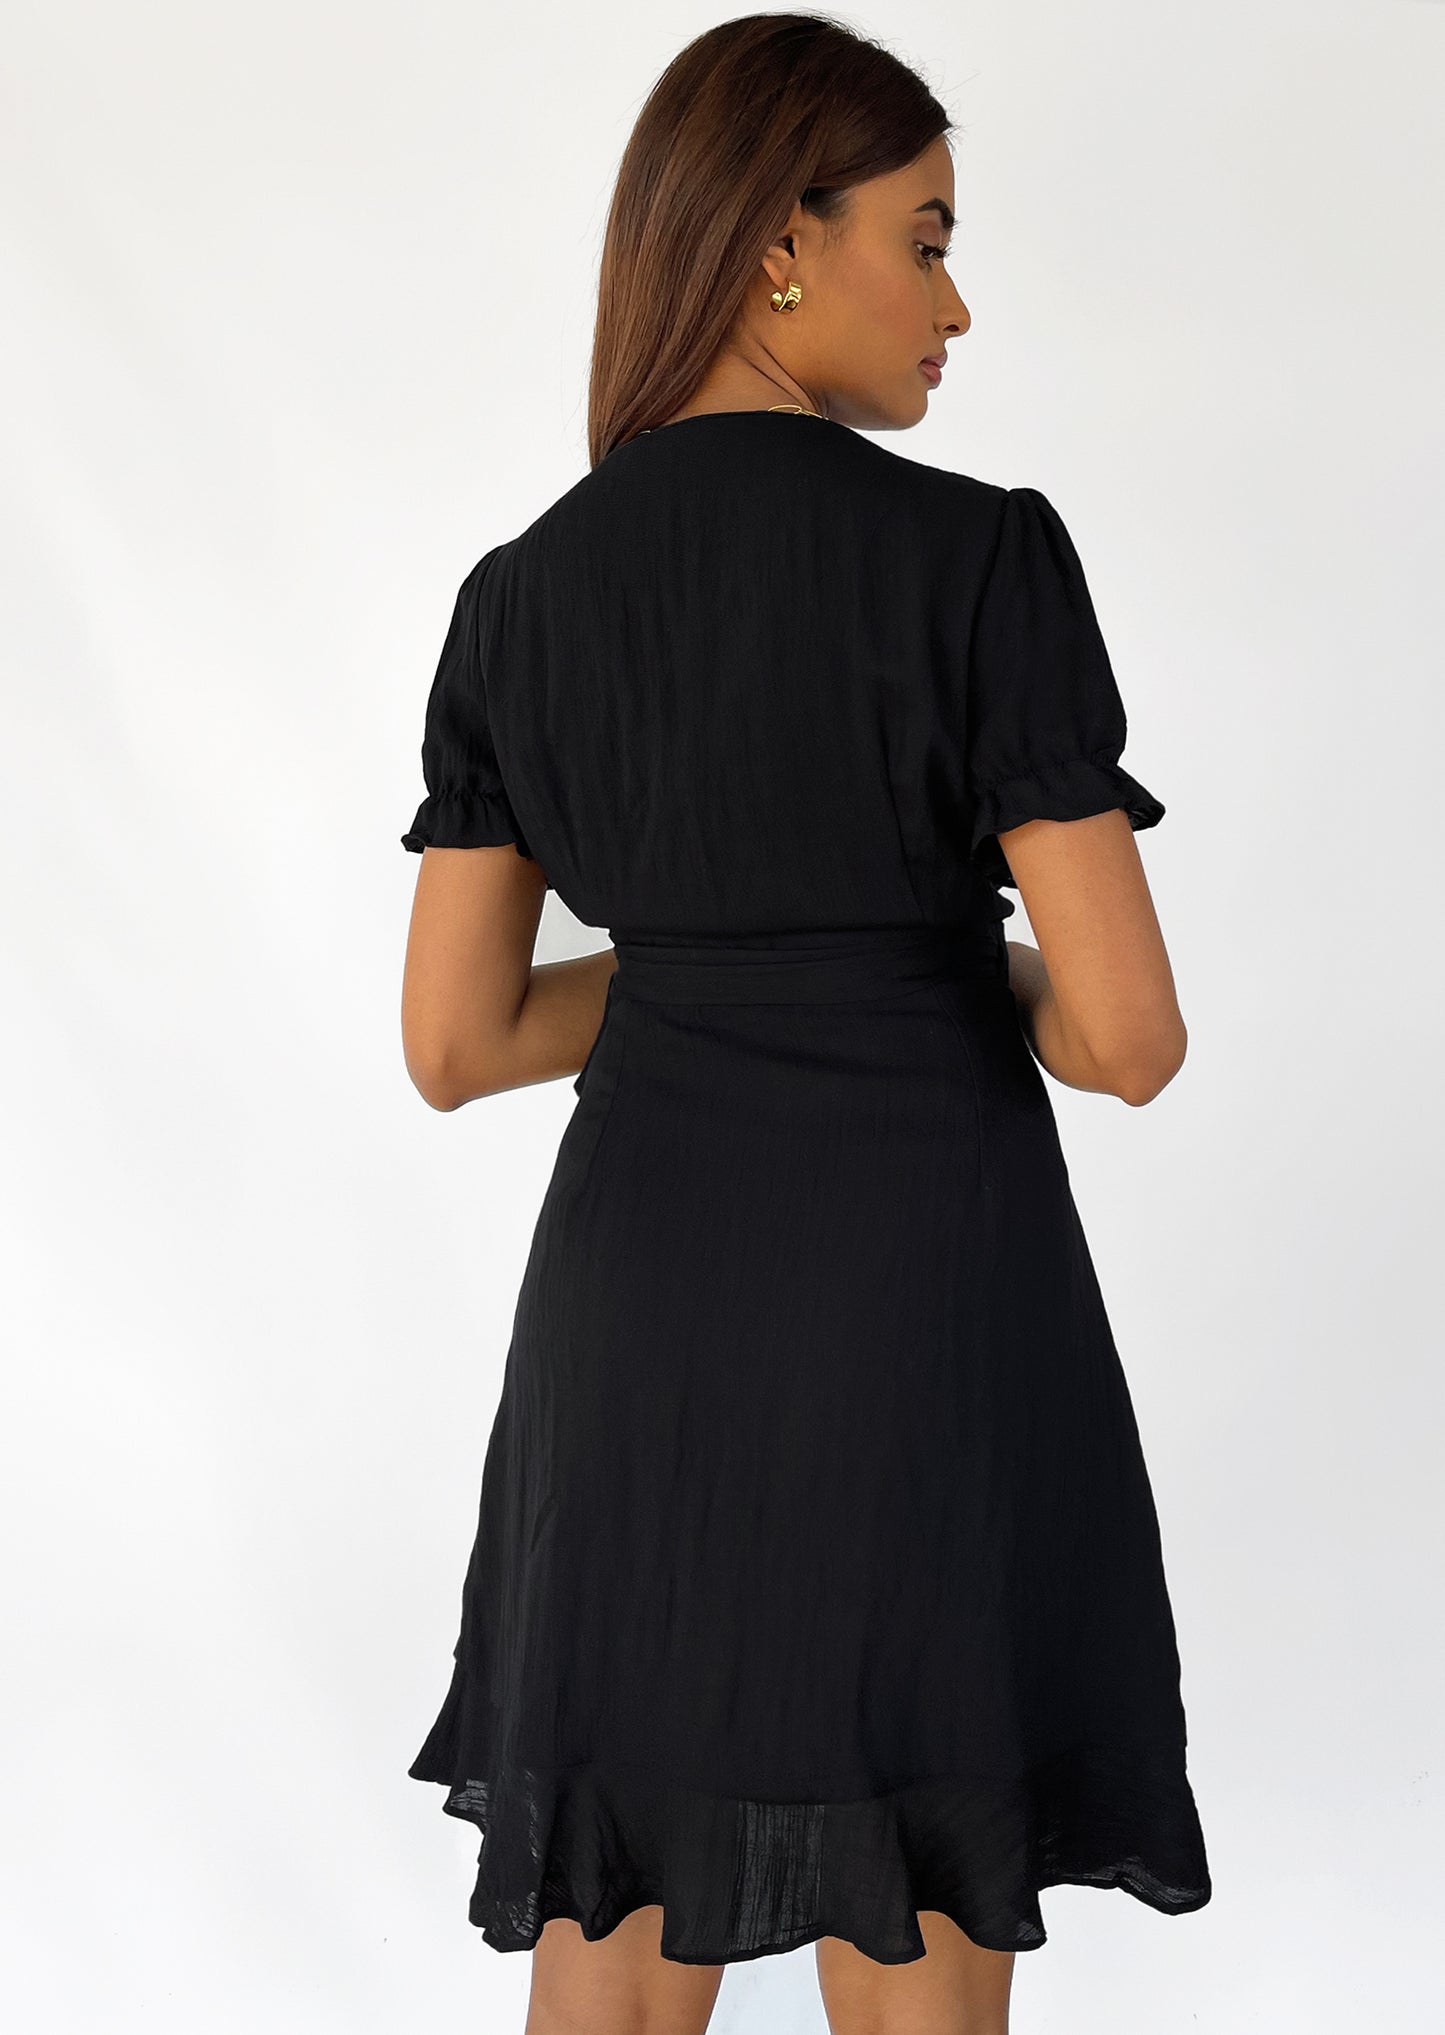 Wrap dress in black